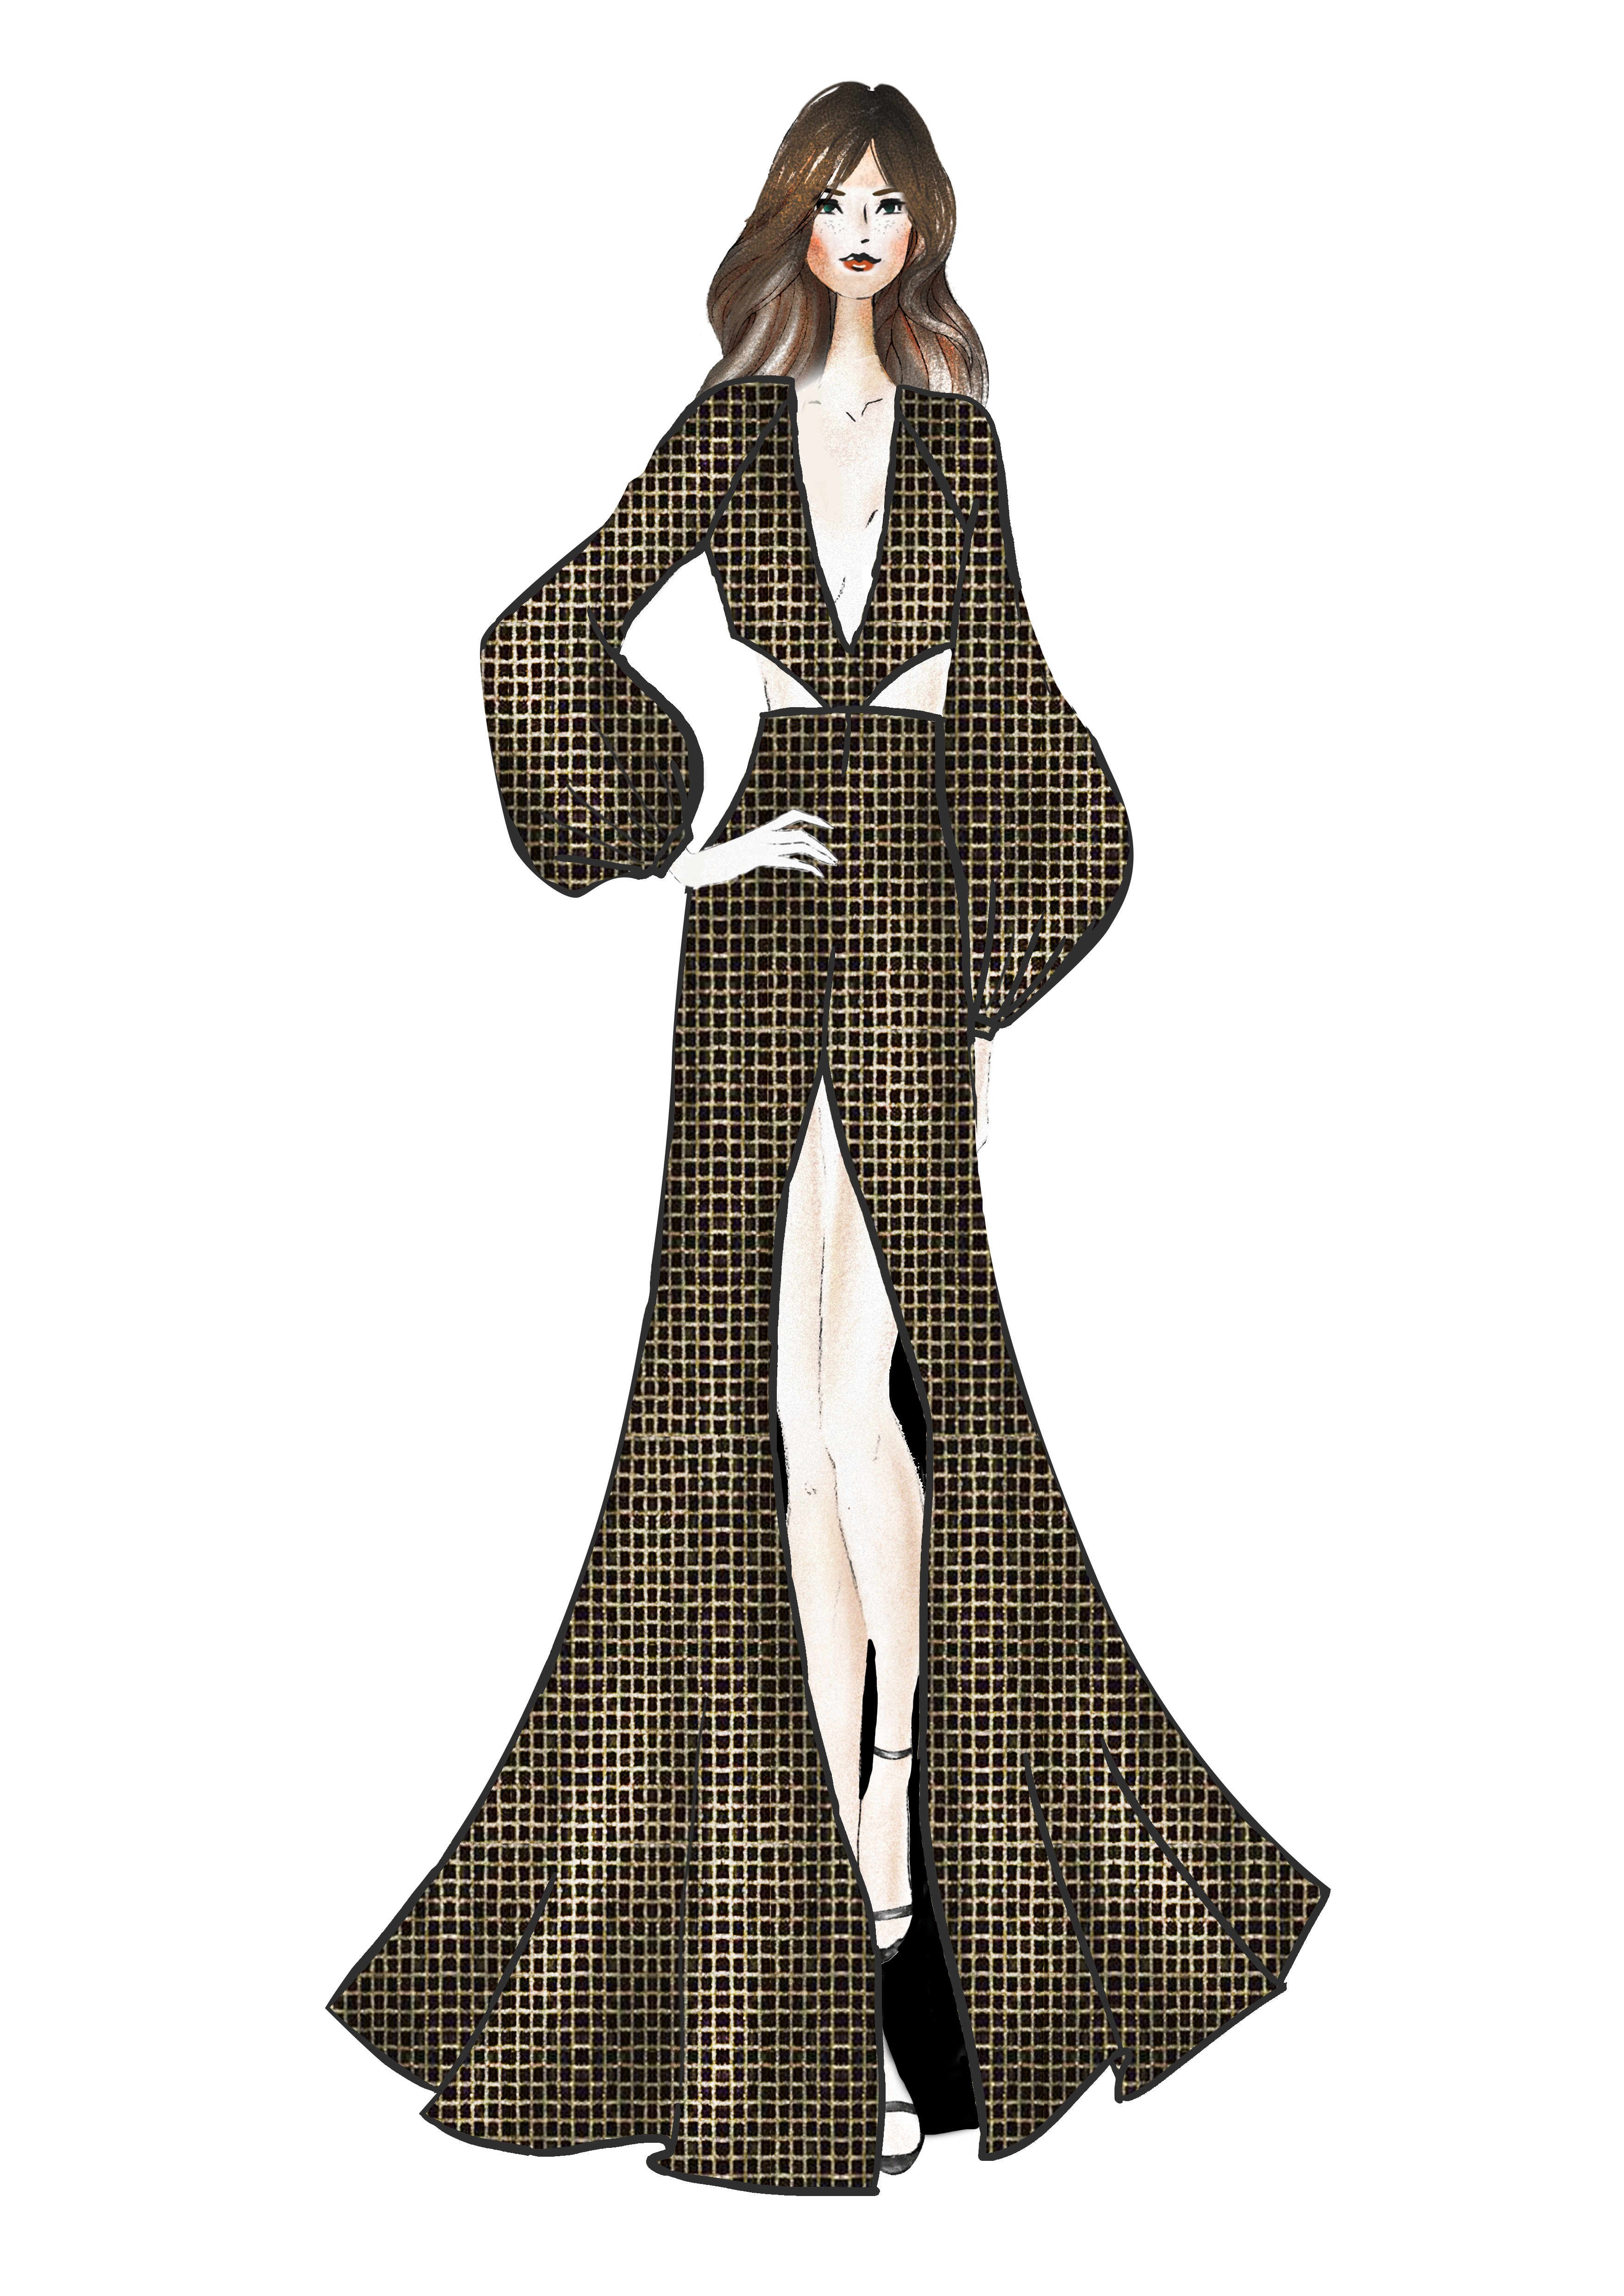 Croqui que Isabeli Fontana vai usar no Baile da Bruxa (Foto: Divugação)